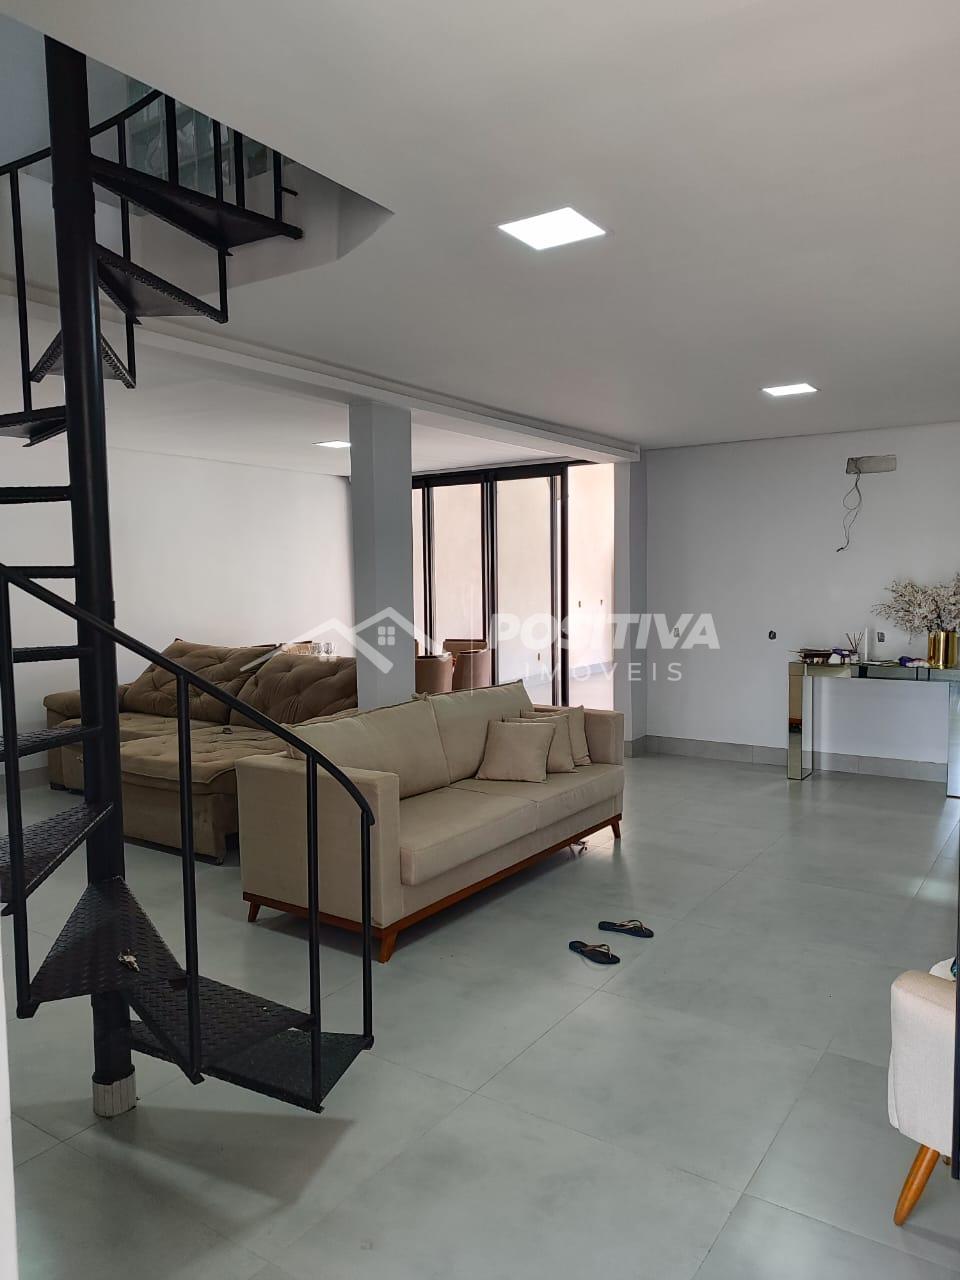 Casa com 3 dormitórios à venda, MORADA DO SOL, RIO VERDE - GO